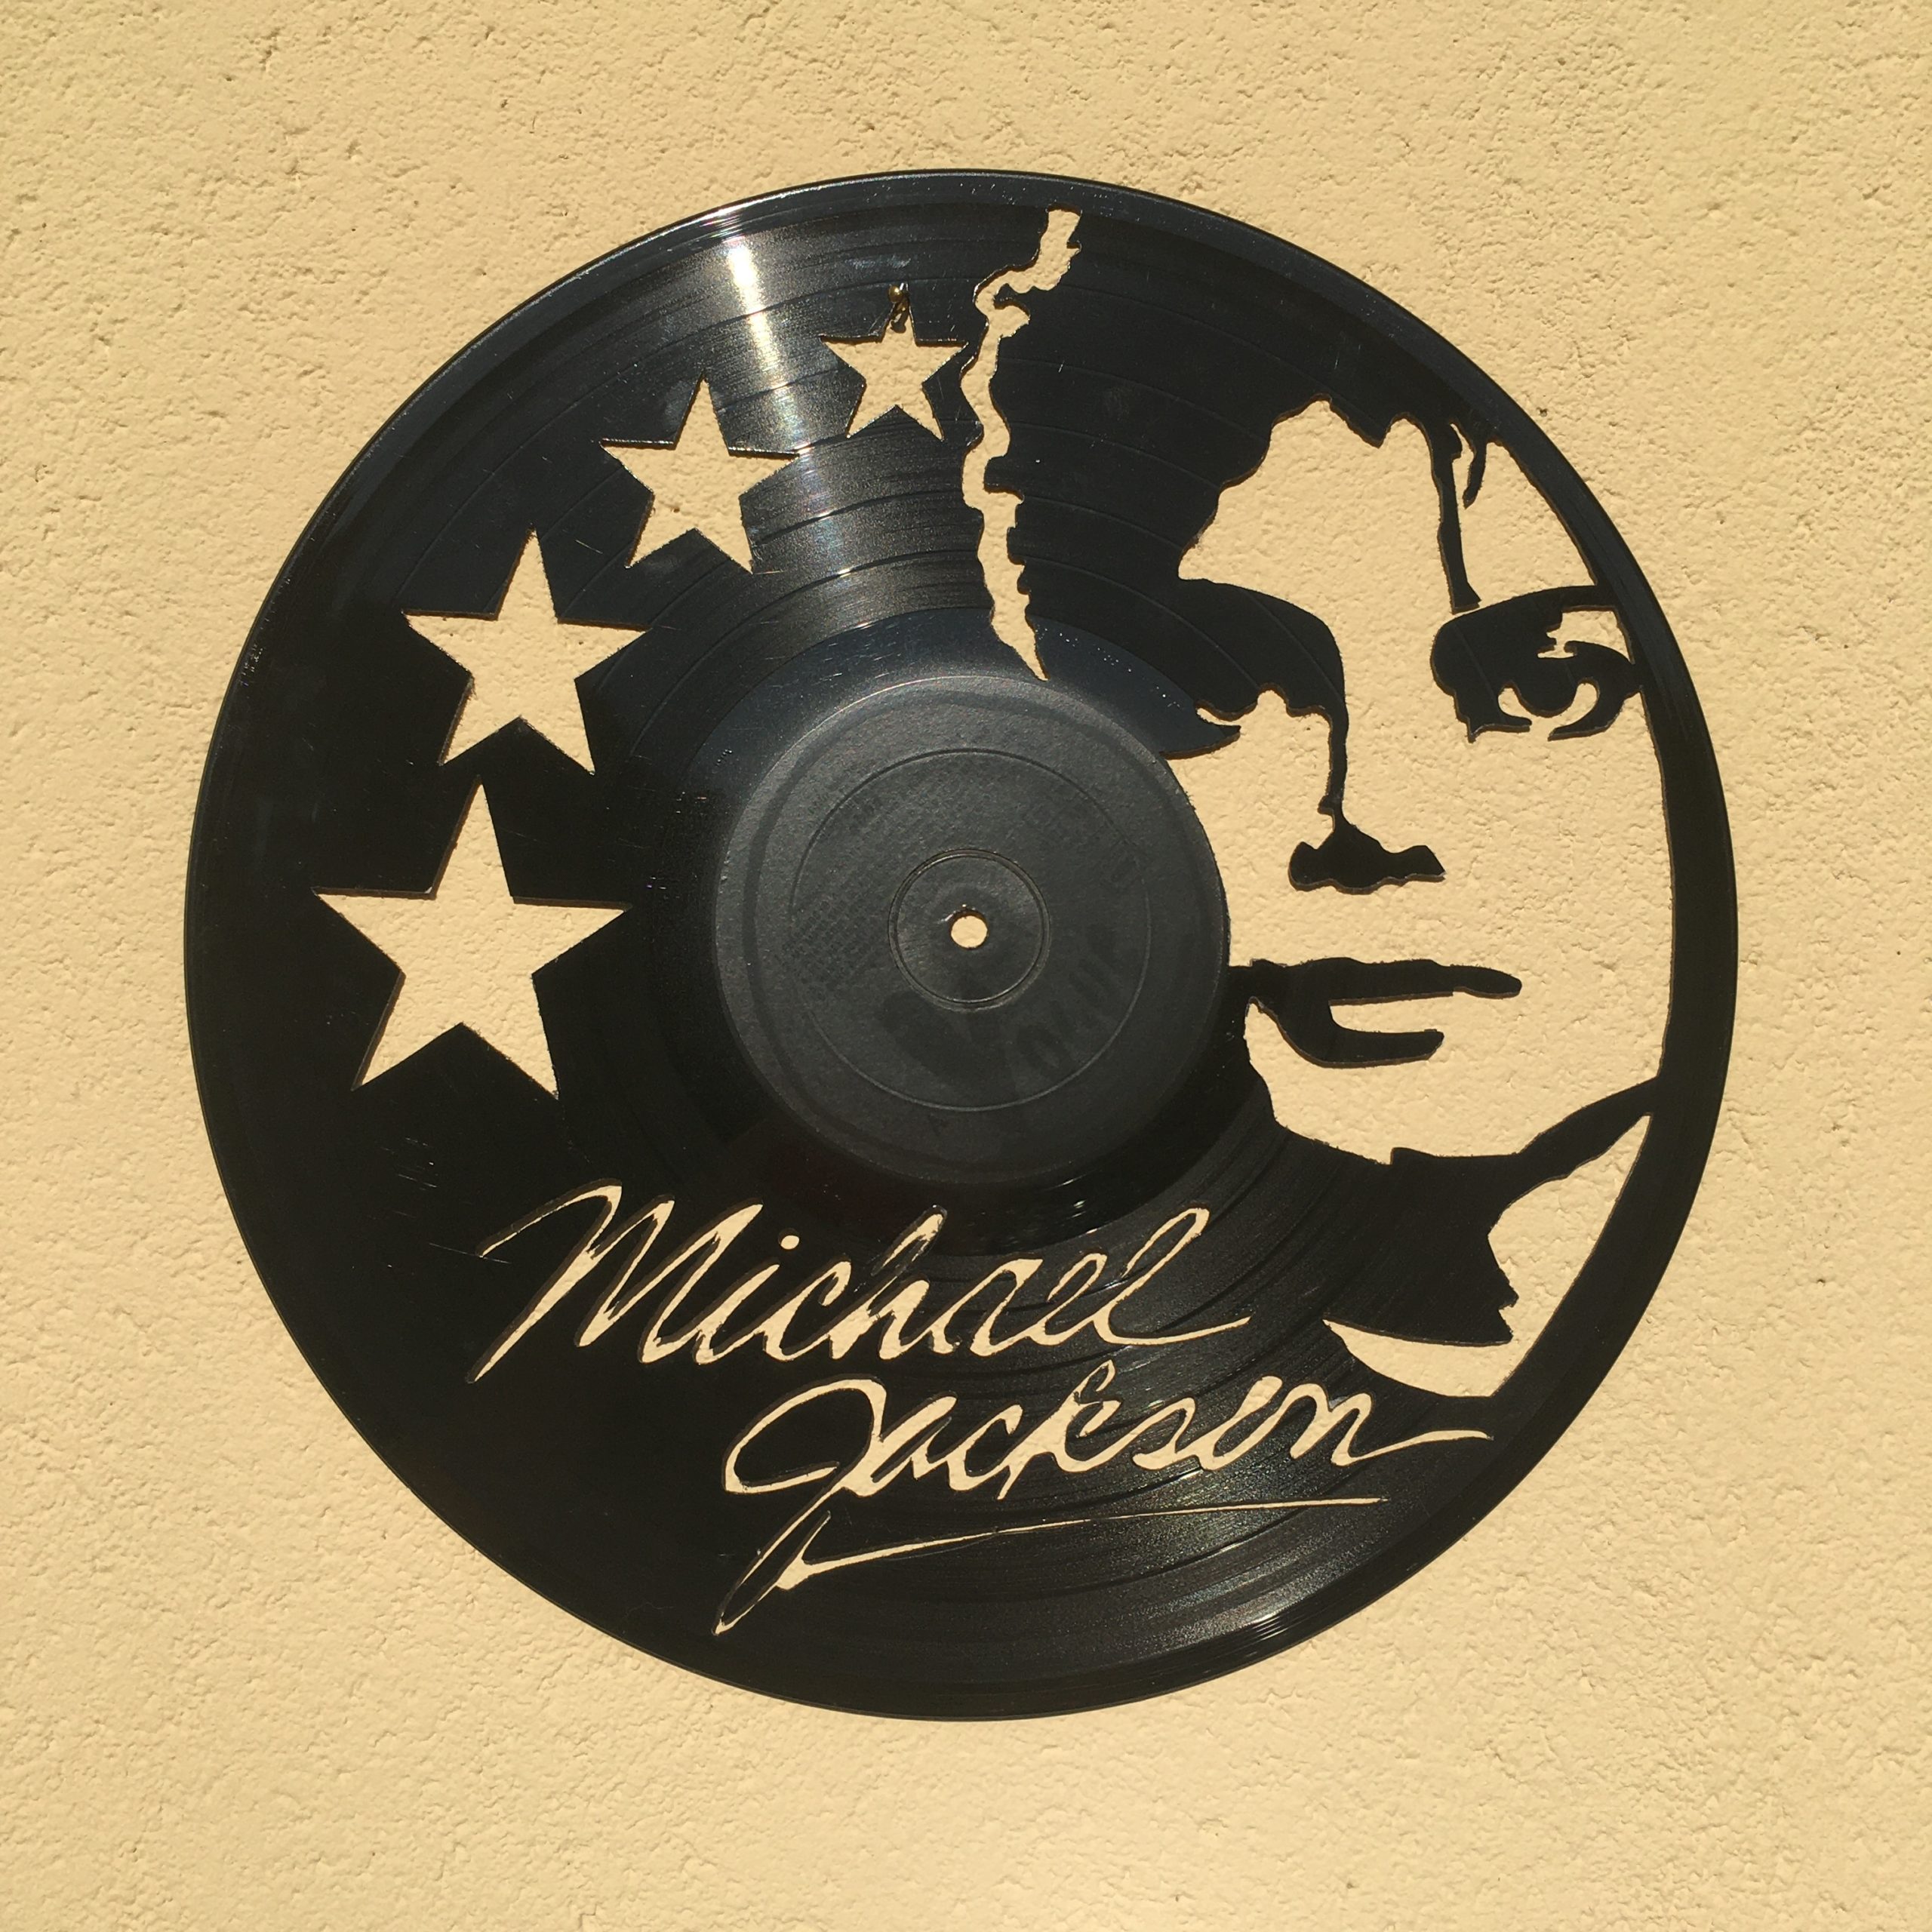 Vinyle Michael Jackson - Fabrication française - Menuiserie Pichot